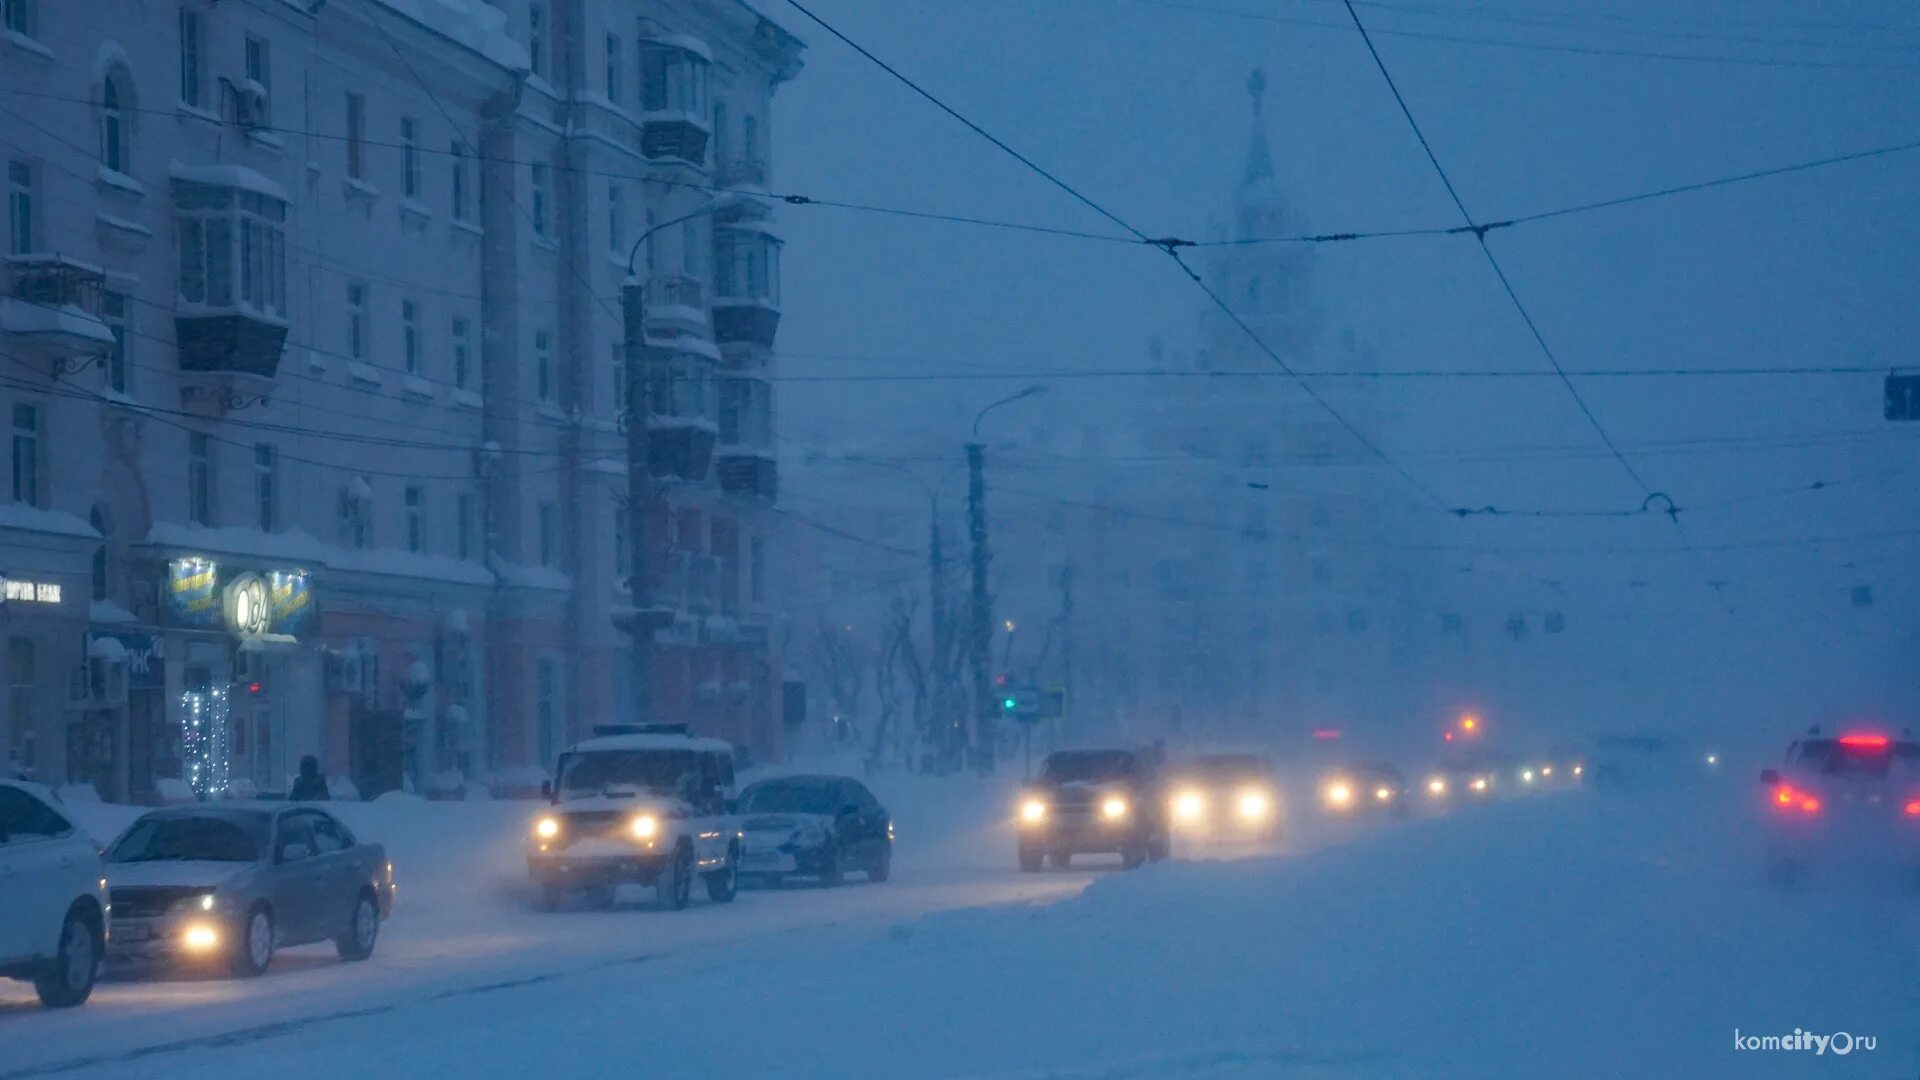 6 декабря 2014 год. Комсомольск на Амуре снегопад 2014. Комсомольск на Амуре снегопад. Комсомольск-на-Амуре снегопад 2013. Комсомольск на Амуре зима 2013.